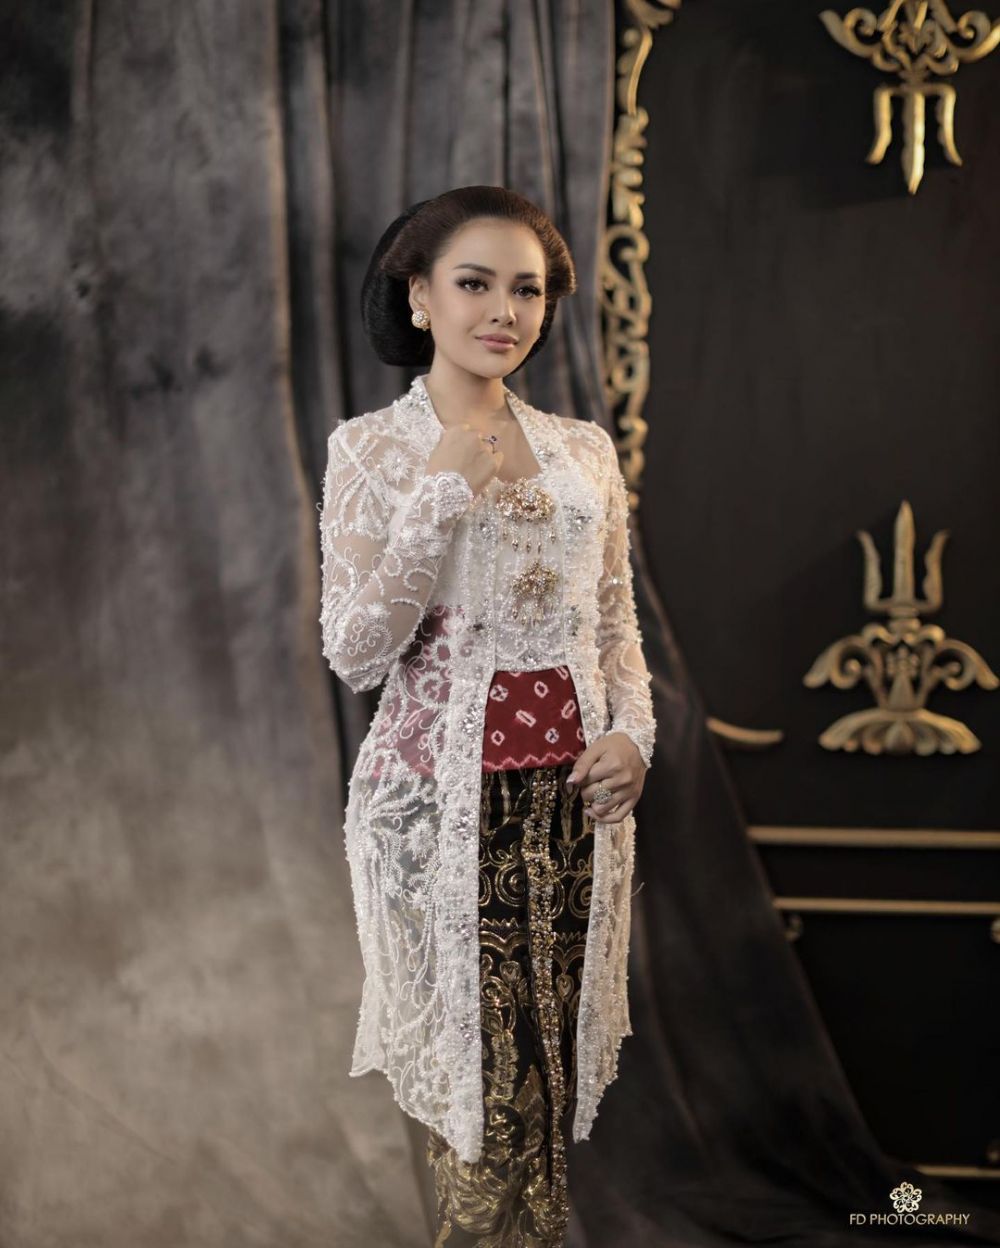 Pesona 10 seleb cantik pemotretan pakai baju adat Jawa, curi perhatian